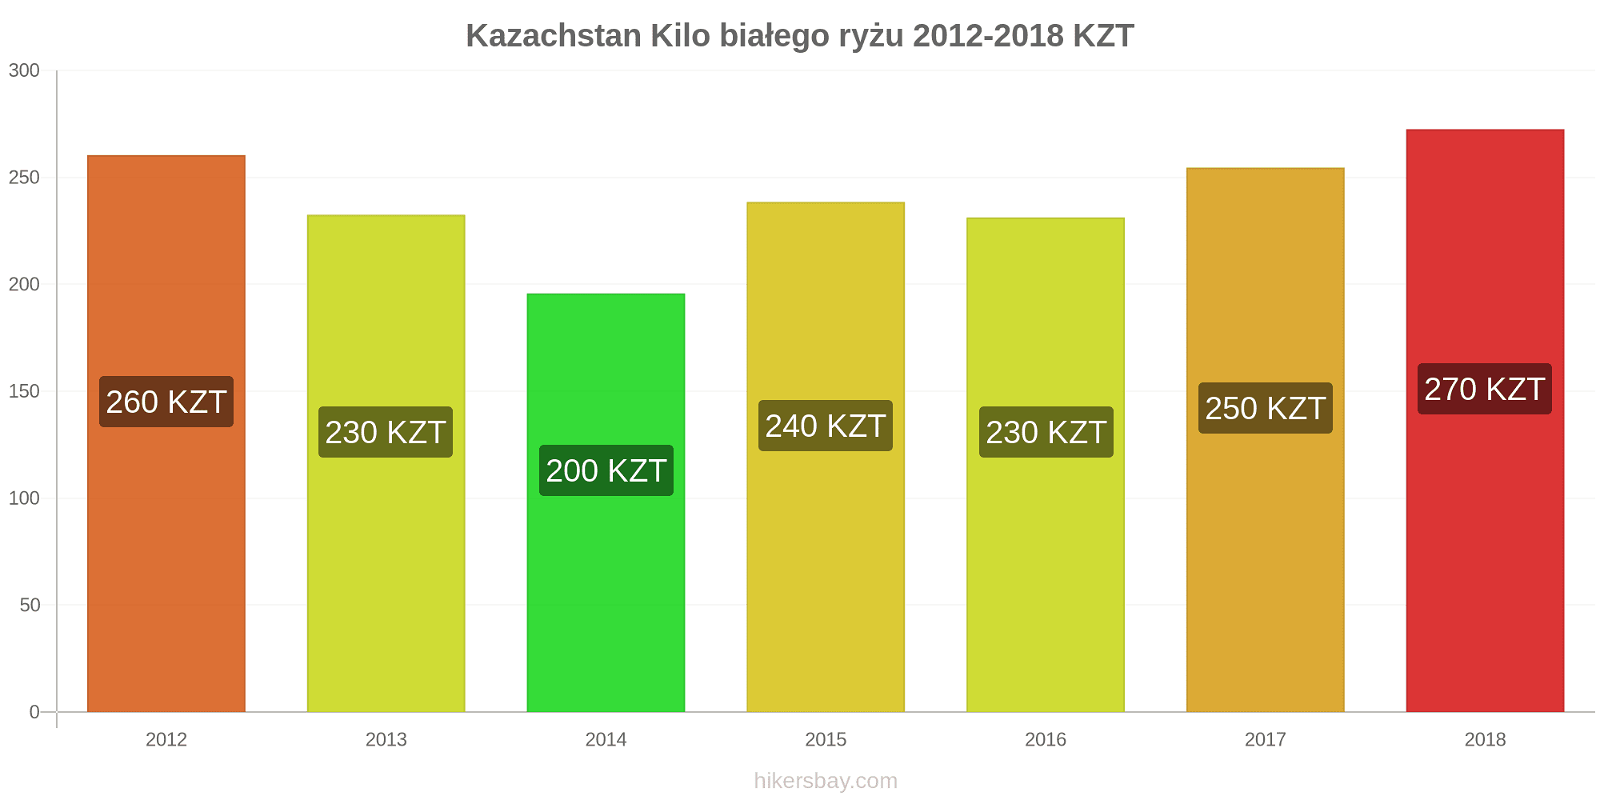 Kazachstan zmiany cen Kilo białego ryżu hikersbay.com